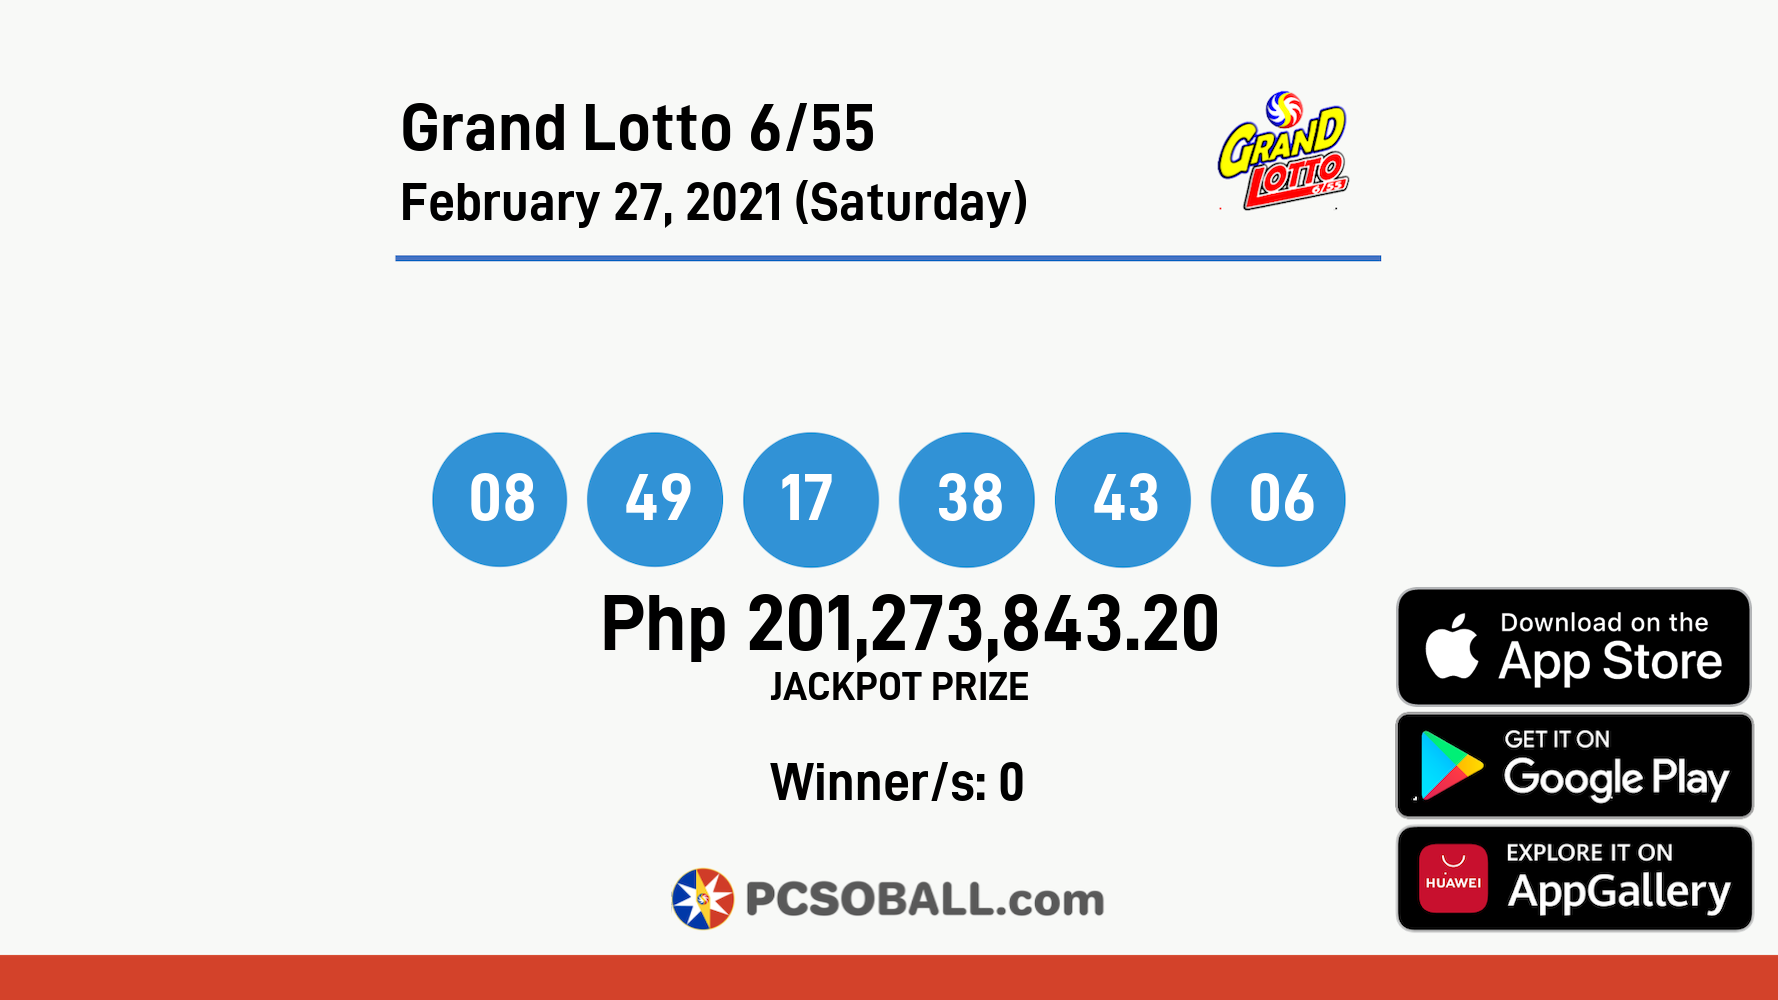 Grand Lotto 6/55 February 27, 2021 (Saturday) Result